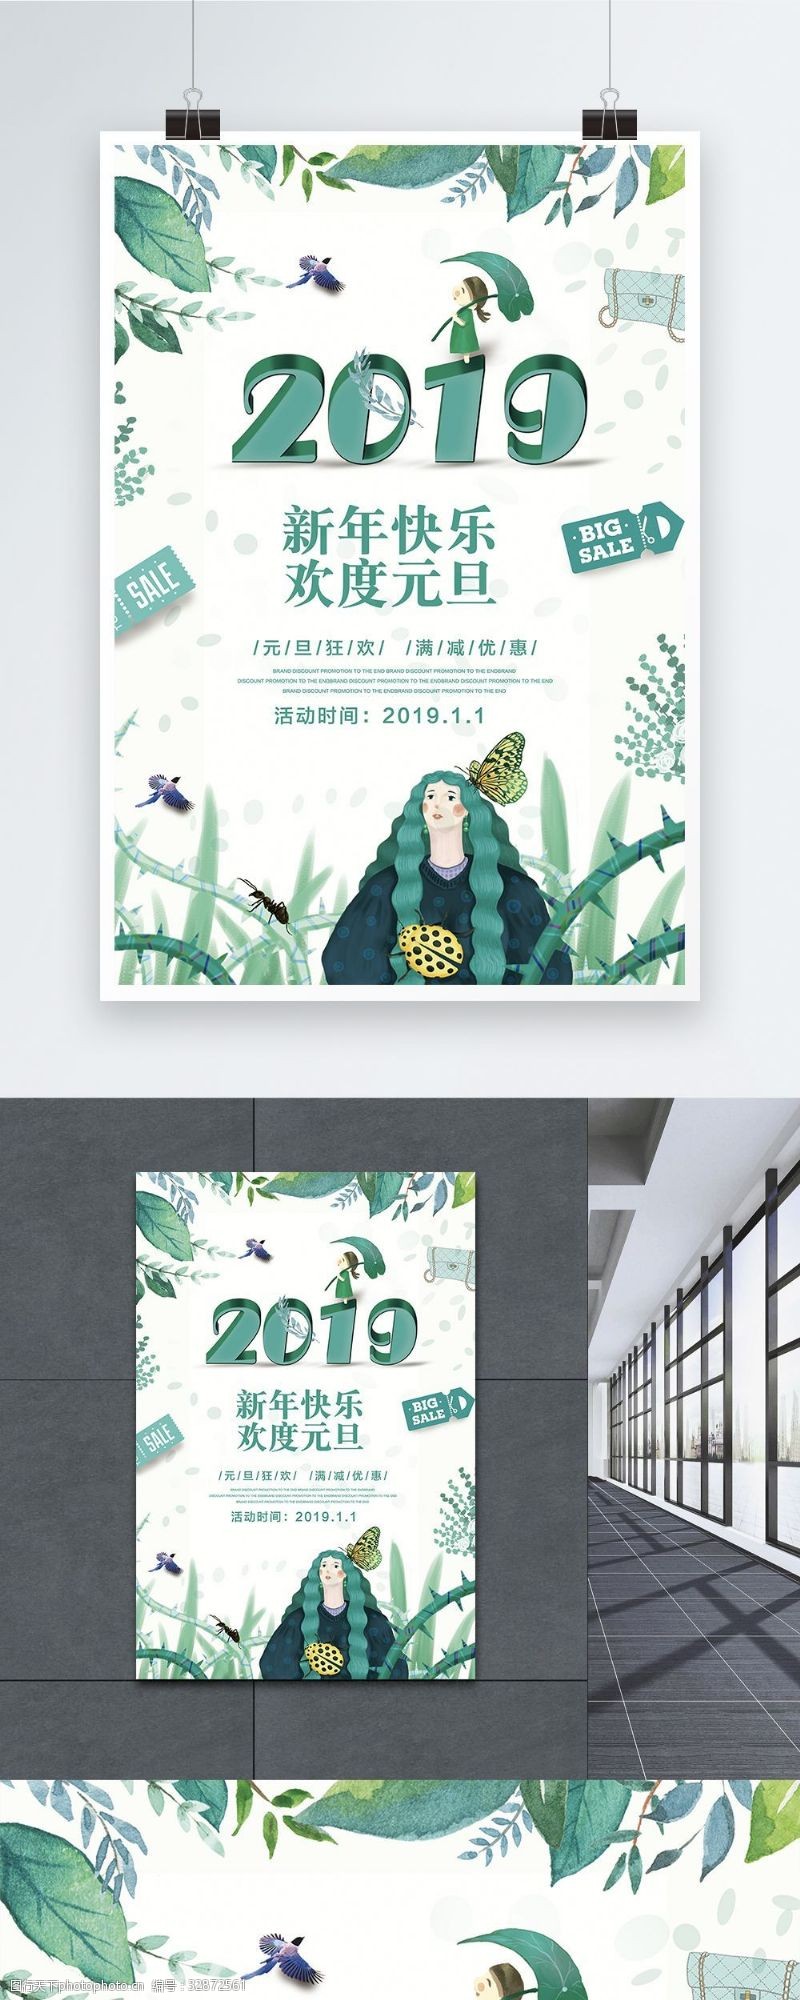 荣耀20192019小清新绿色清新快乐快乐海报设计